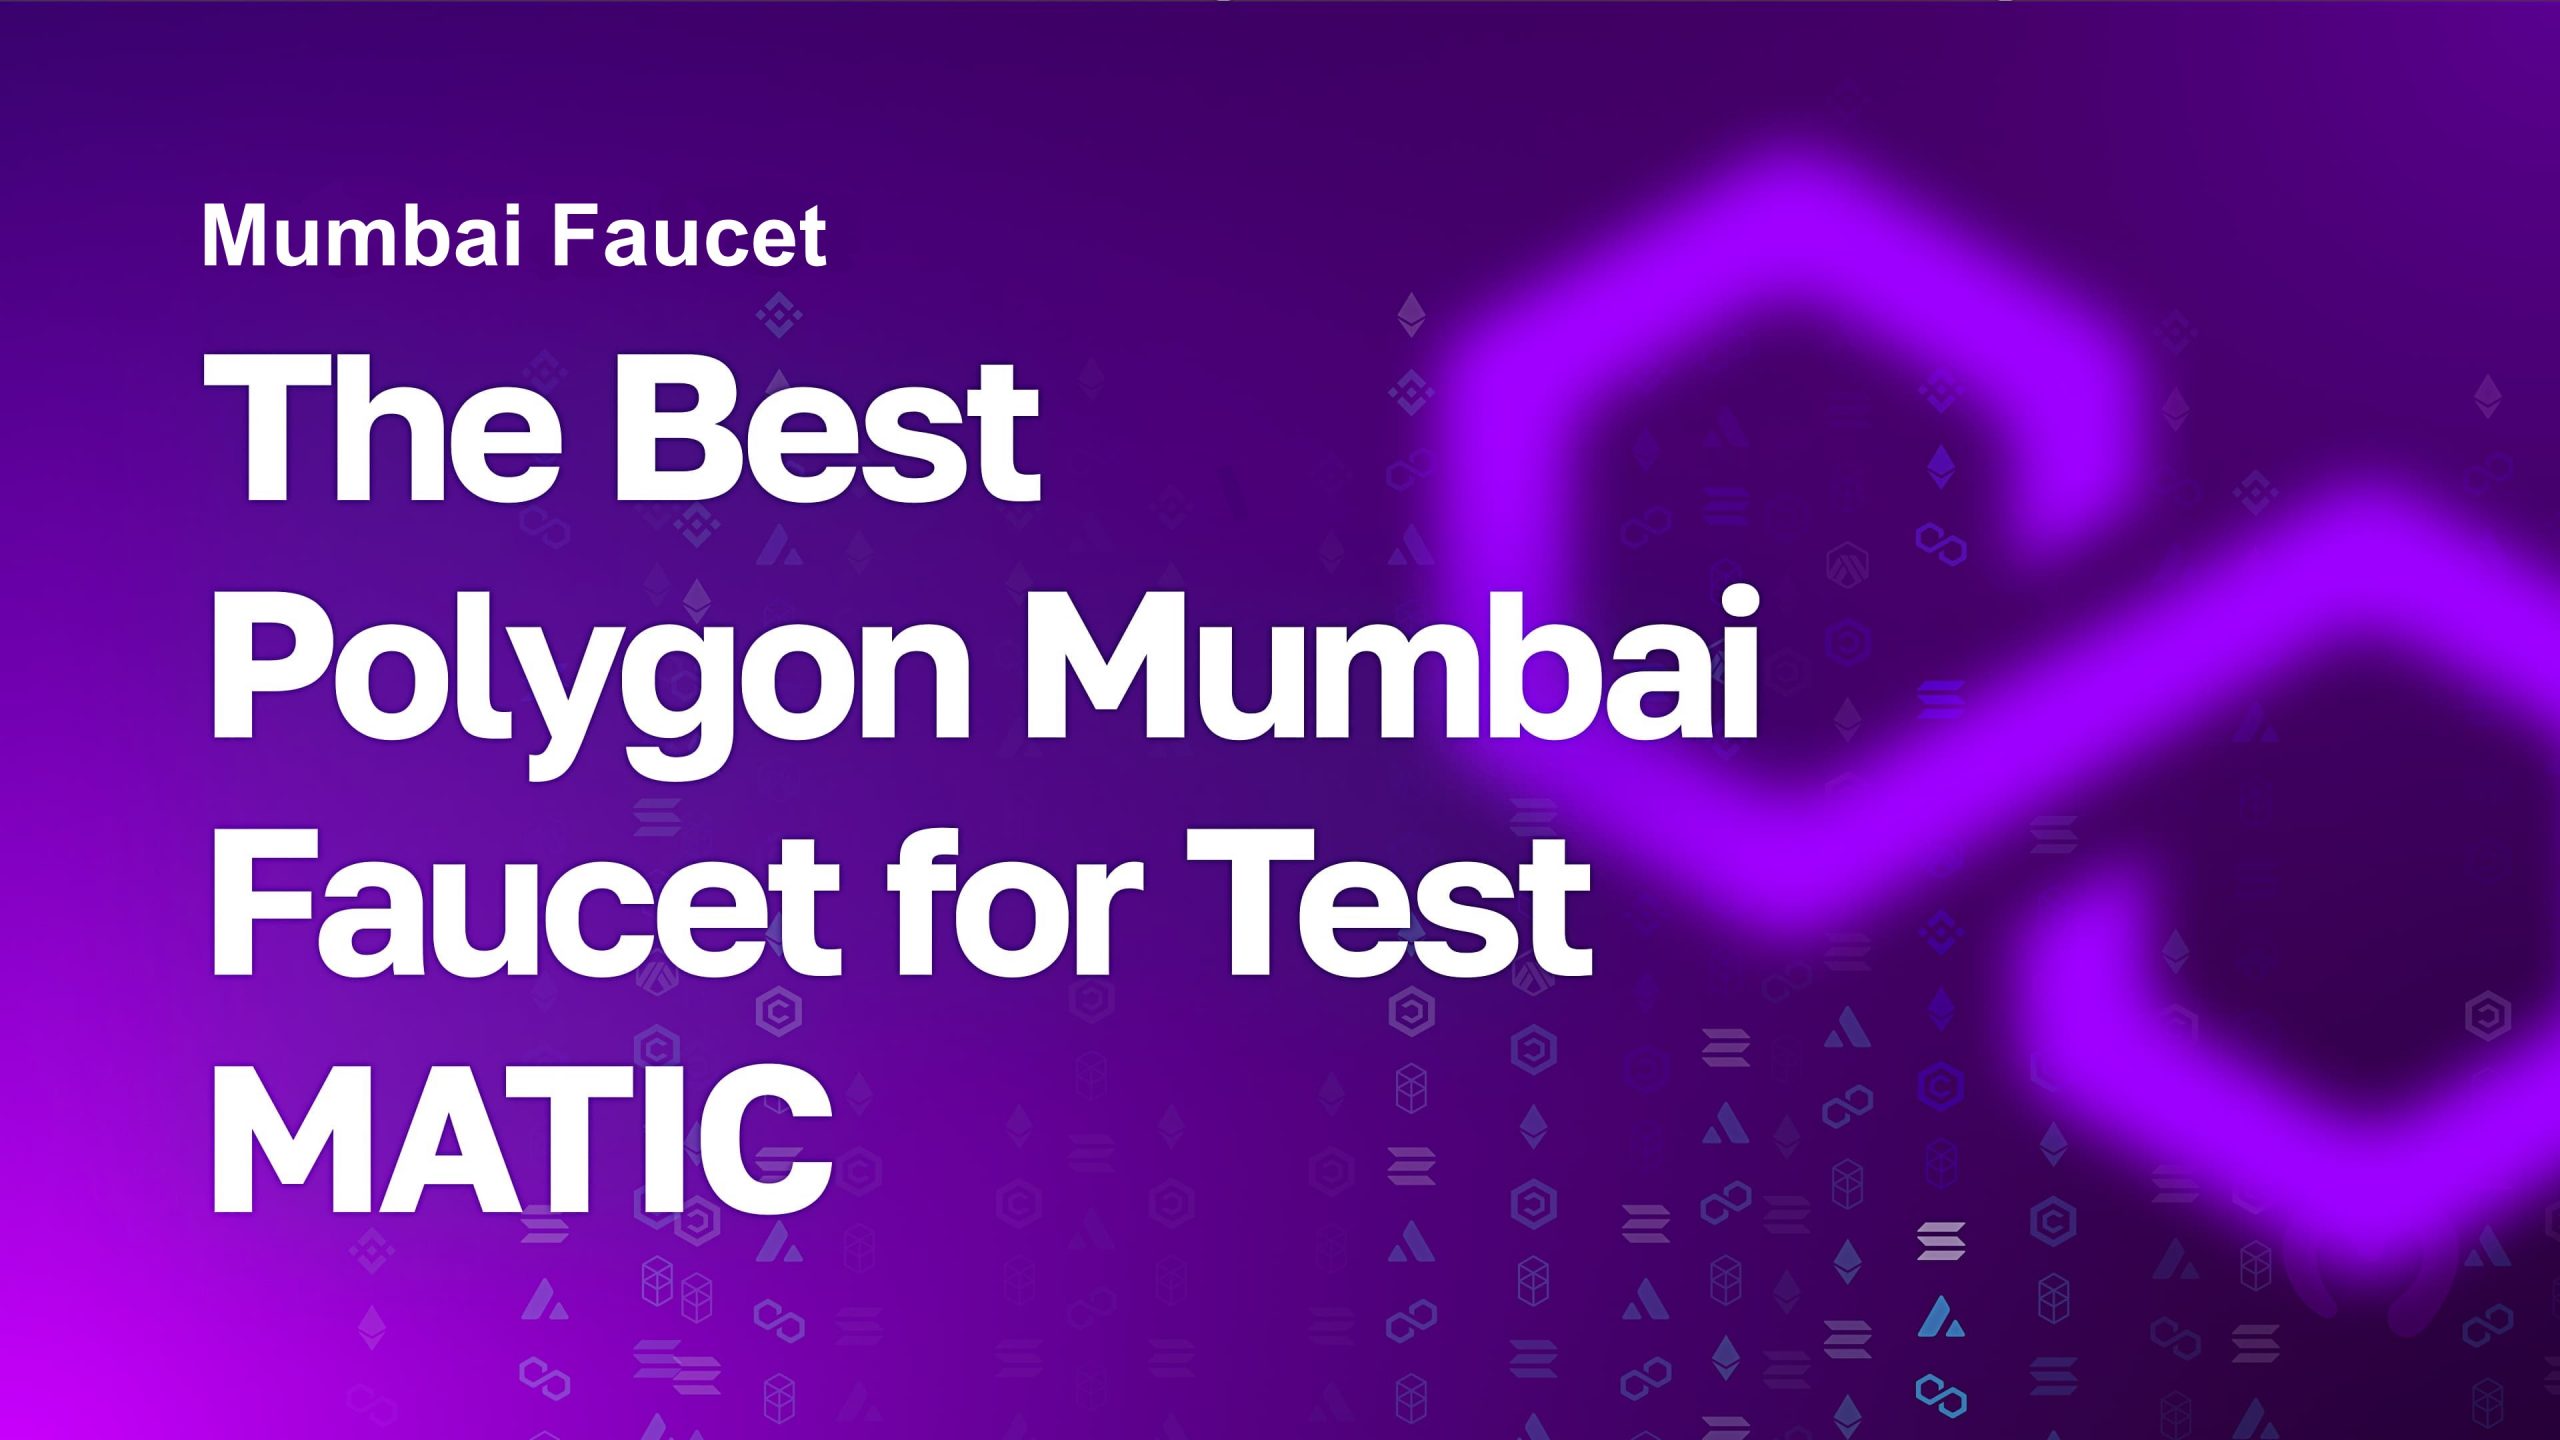 Mumbai Faucet - The Best Polygon Mumbai Faucet for Test MATIC